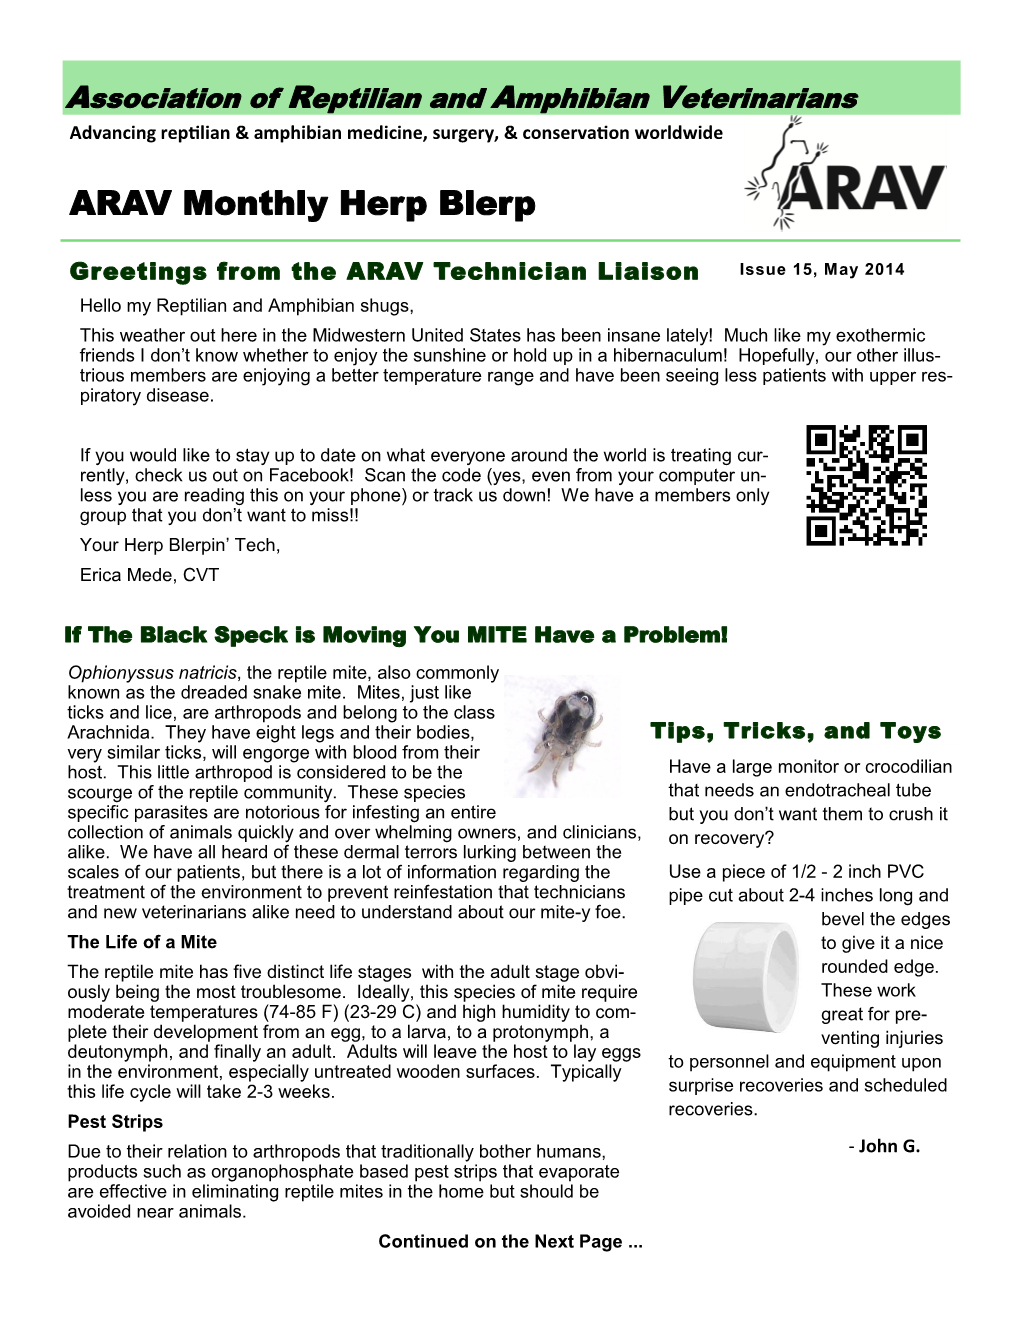 ARAV Monthly Herp Blerp